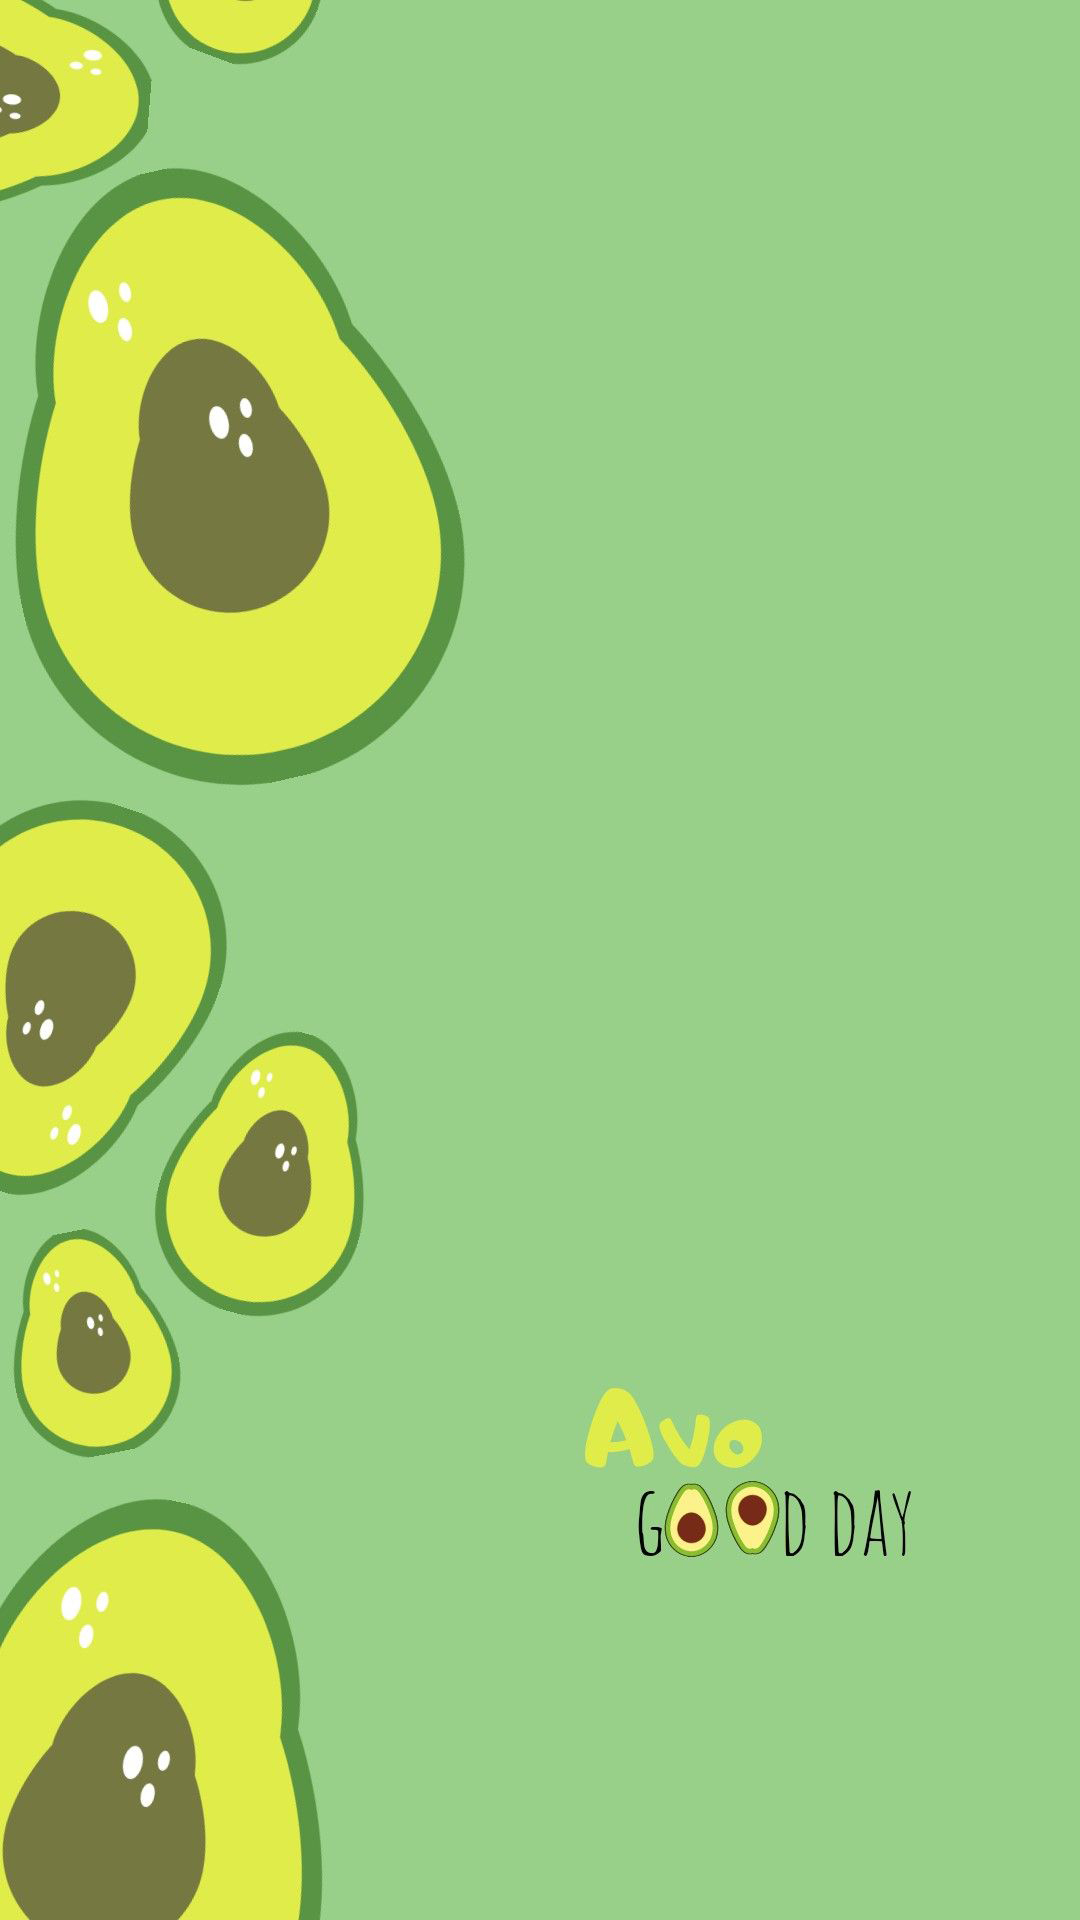 Hình nền xanh lá cây cho iPhone cute và đẹp mắt, tải ngay bạn nhé!